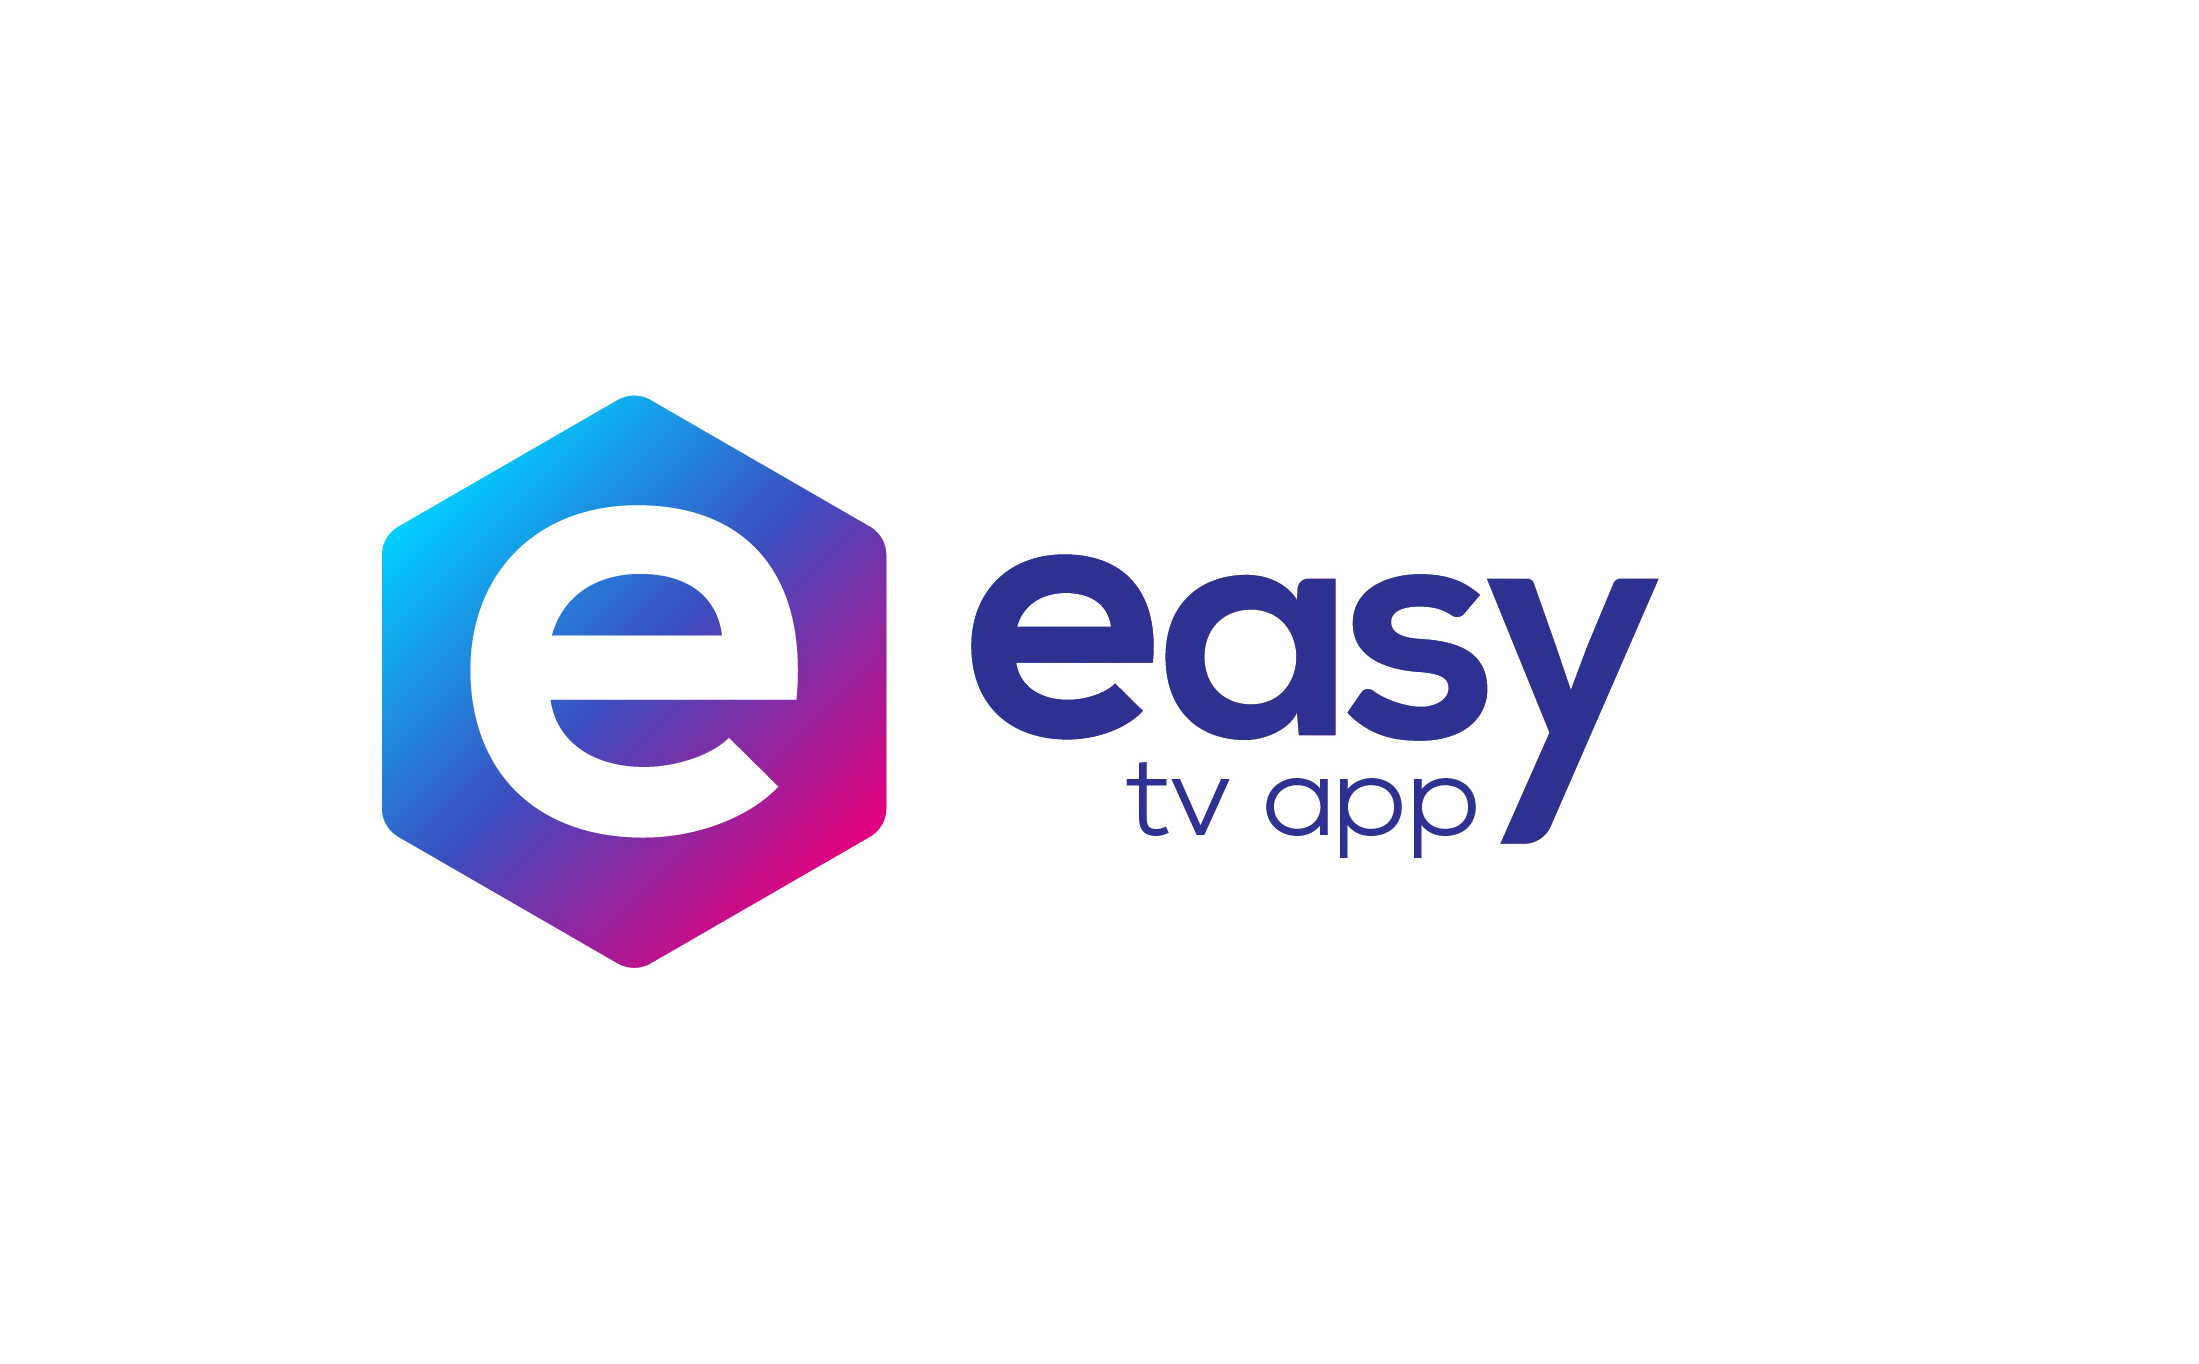 Branding y diseño web para easy tv app por Binarid